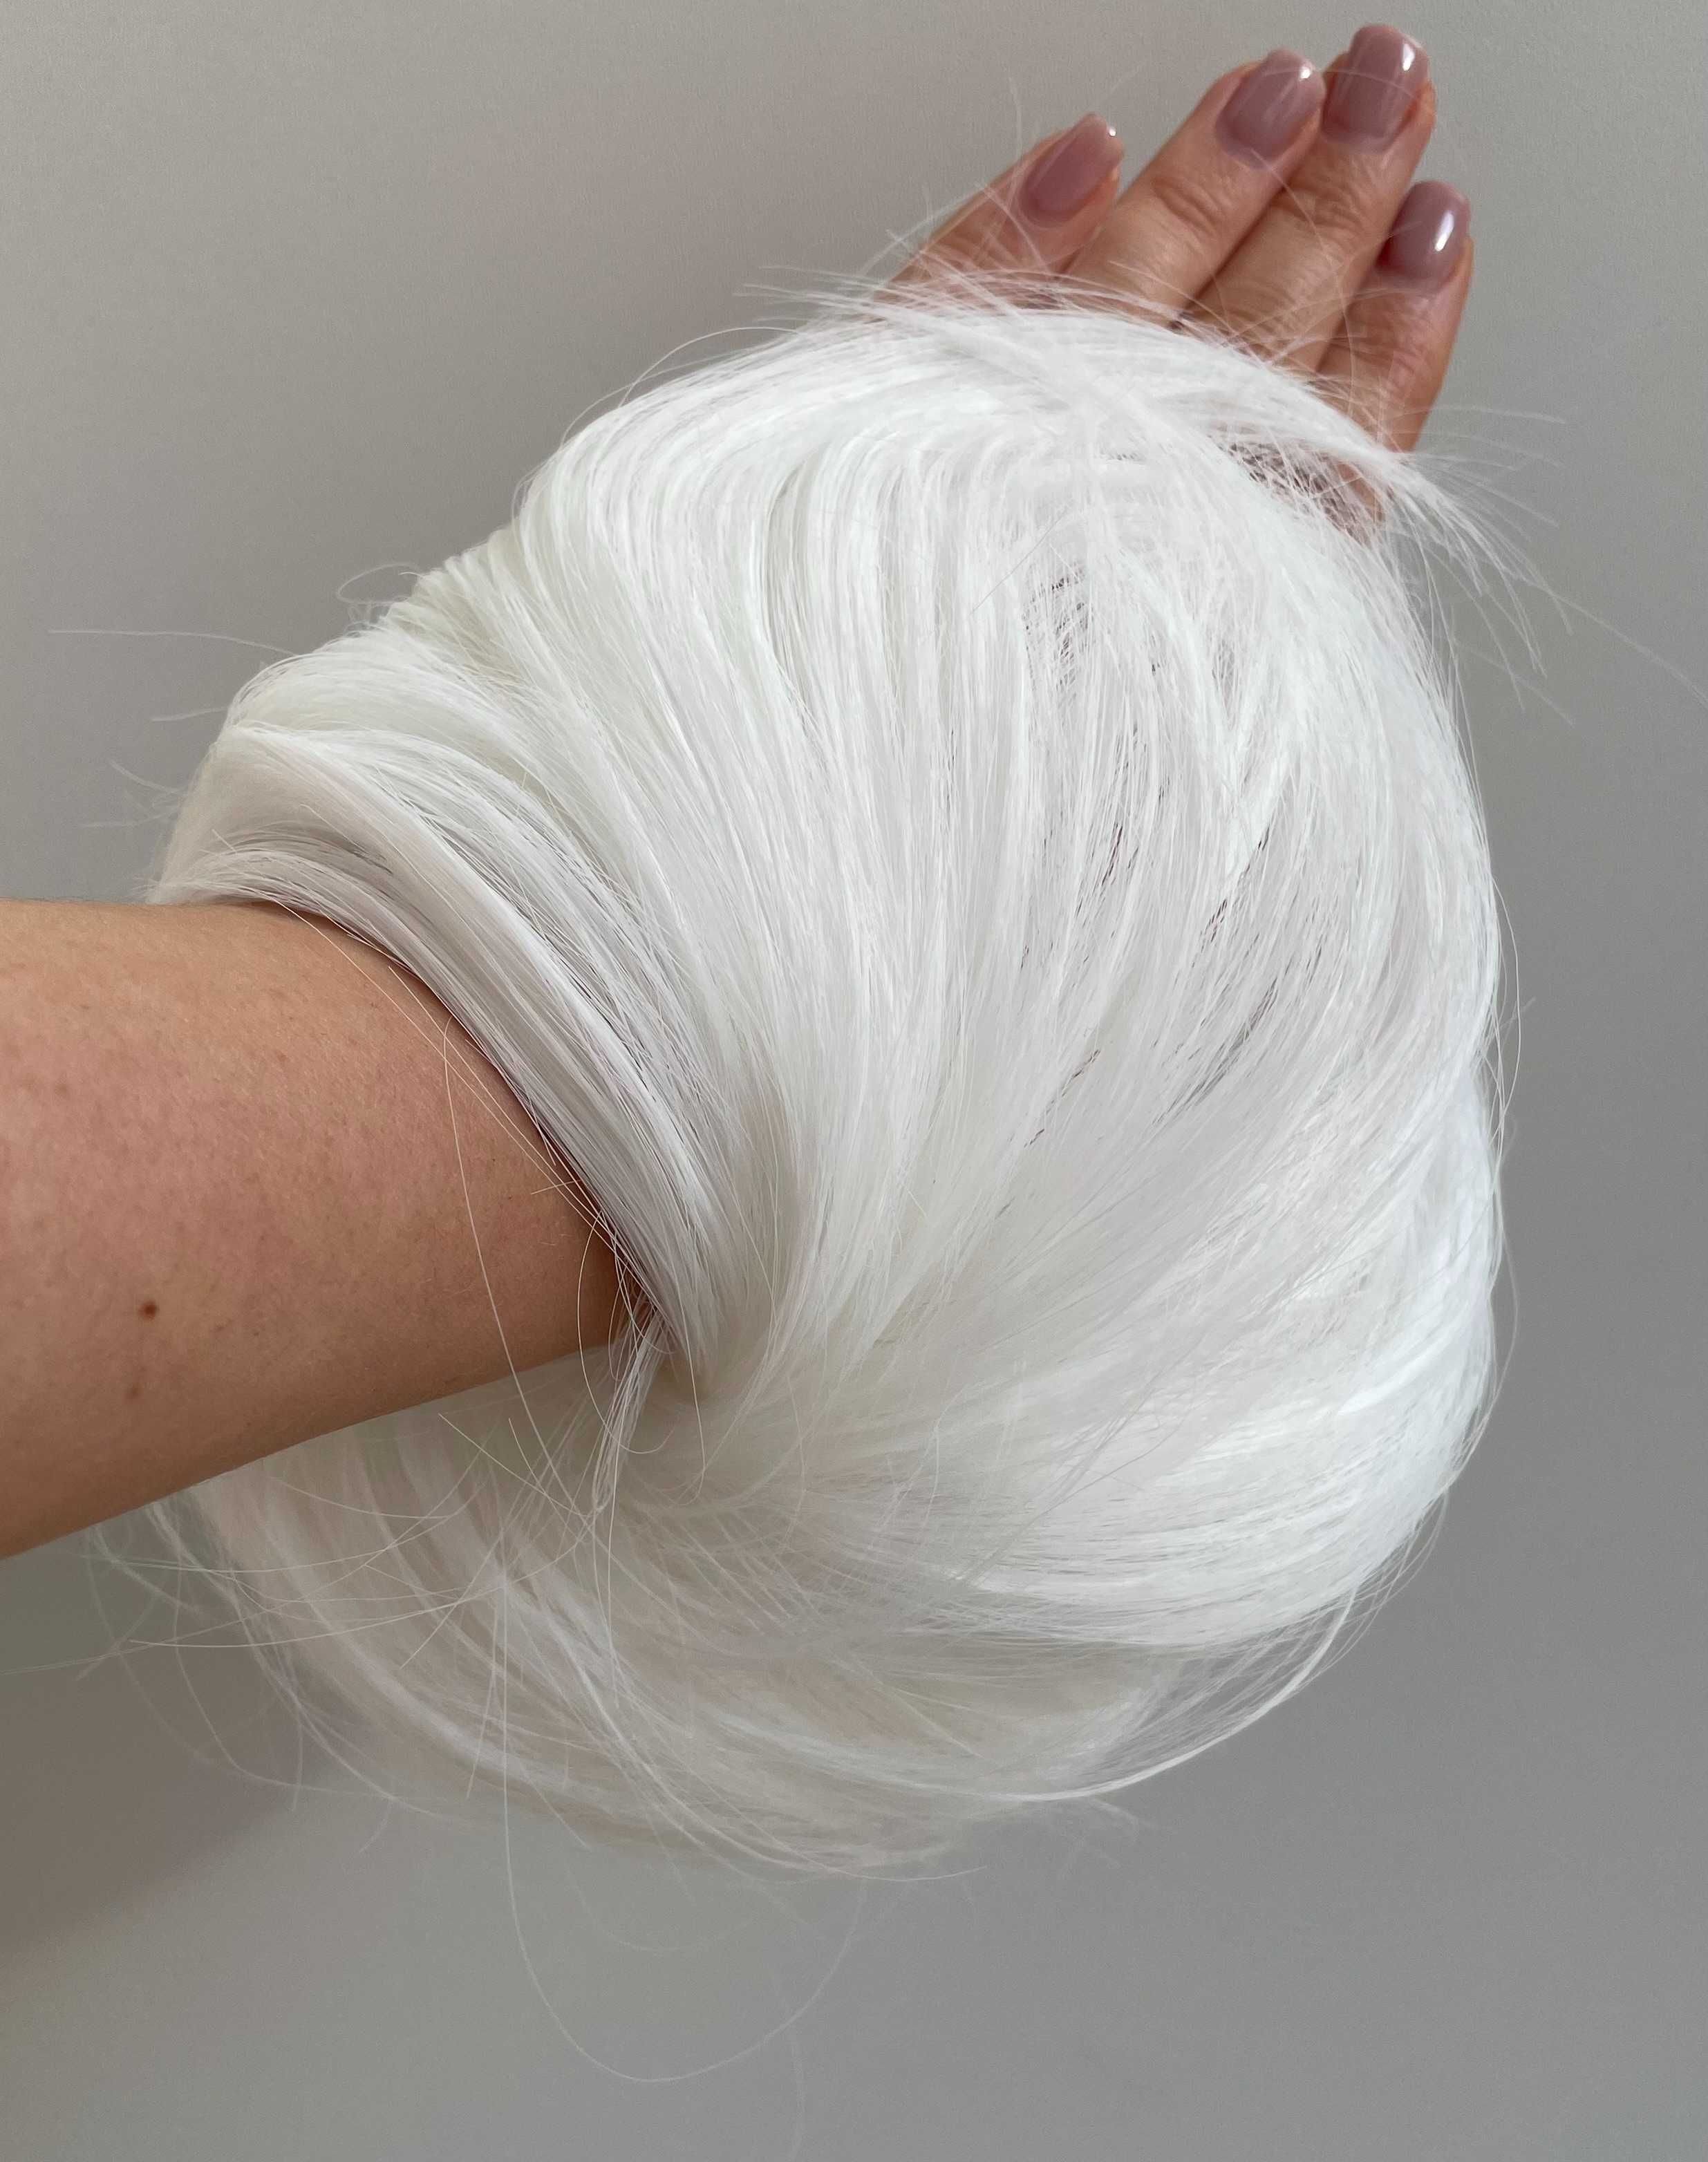 DOCZEPIANY KOK NA GUMCE doczepiane włosy 60A - Albinowski biały blond